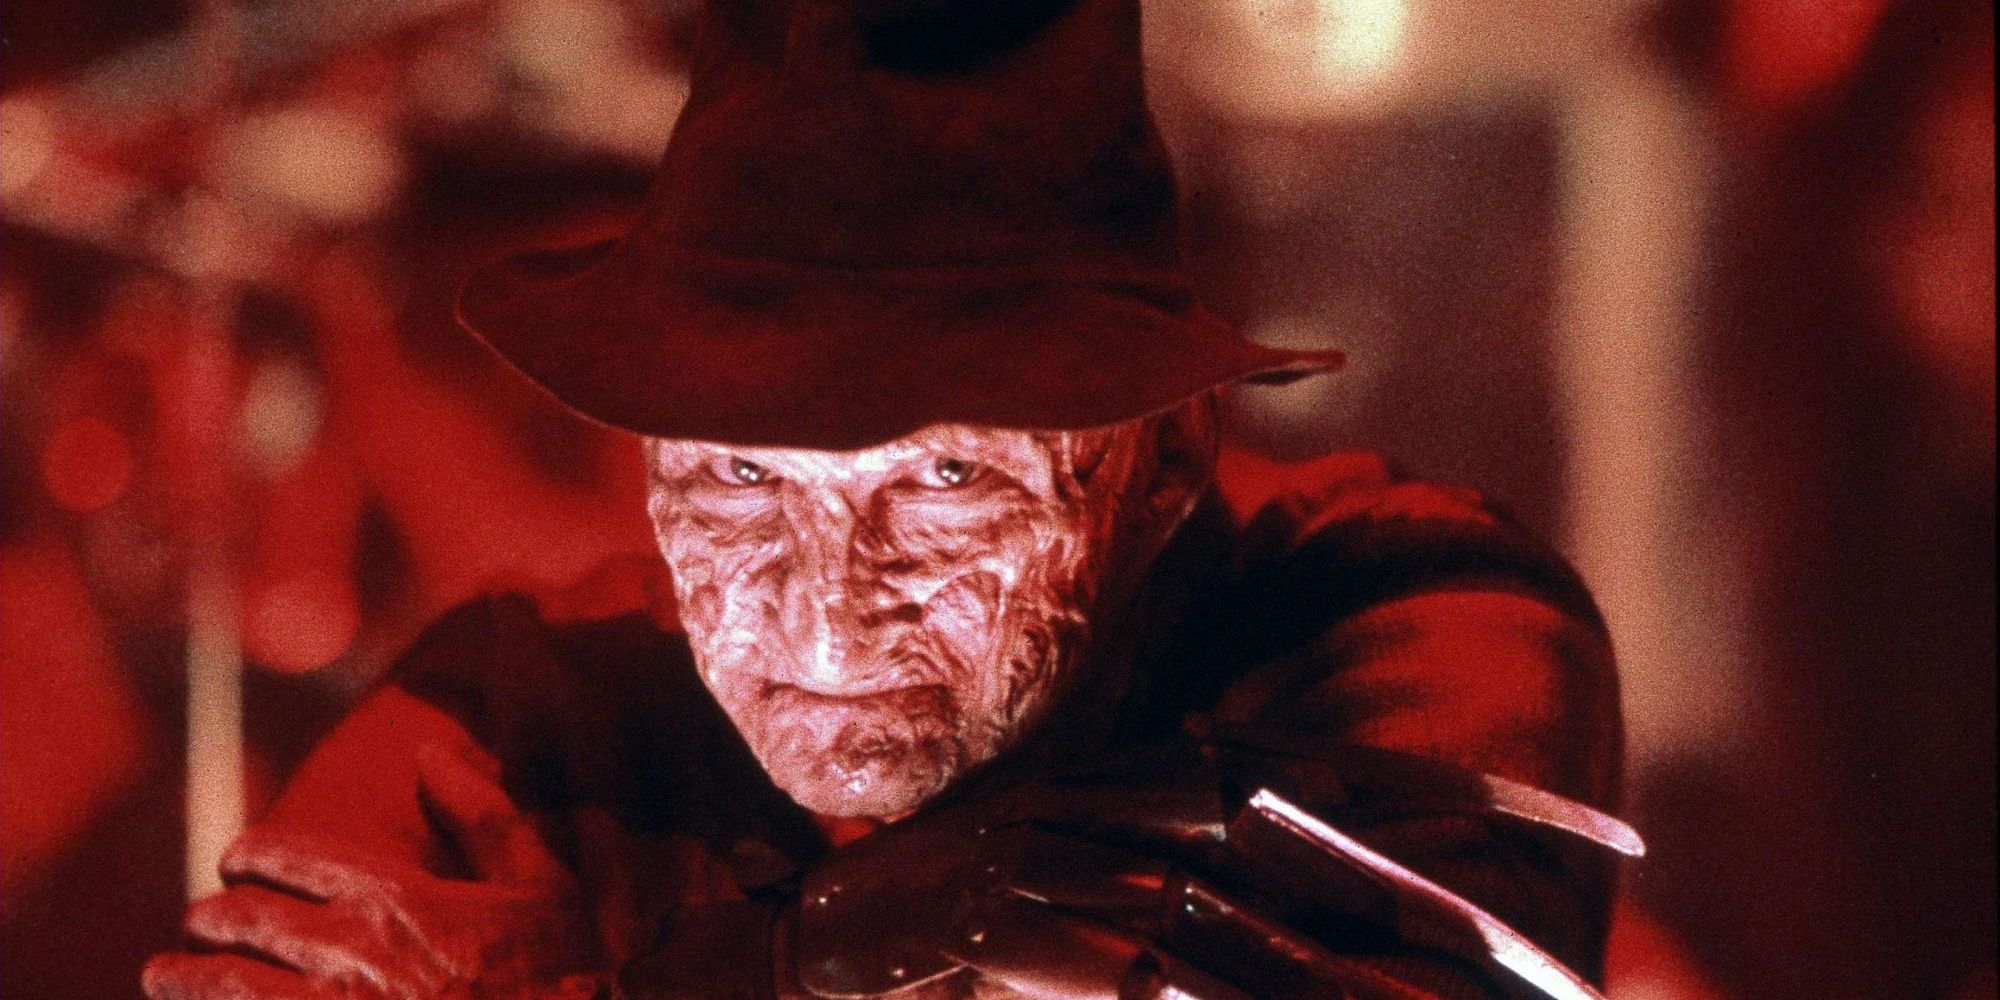 Robert Englund as A Nightmare on Elm Street's Freddy Krueger